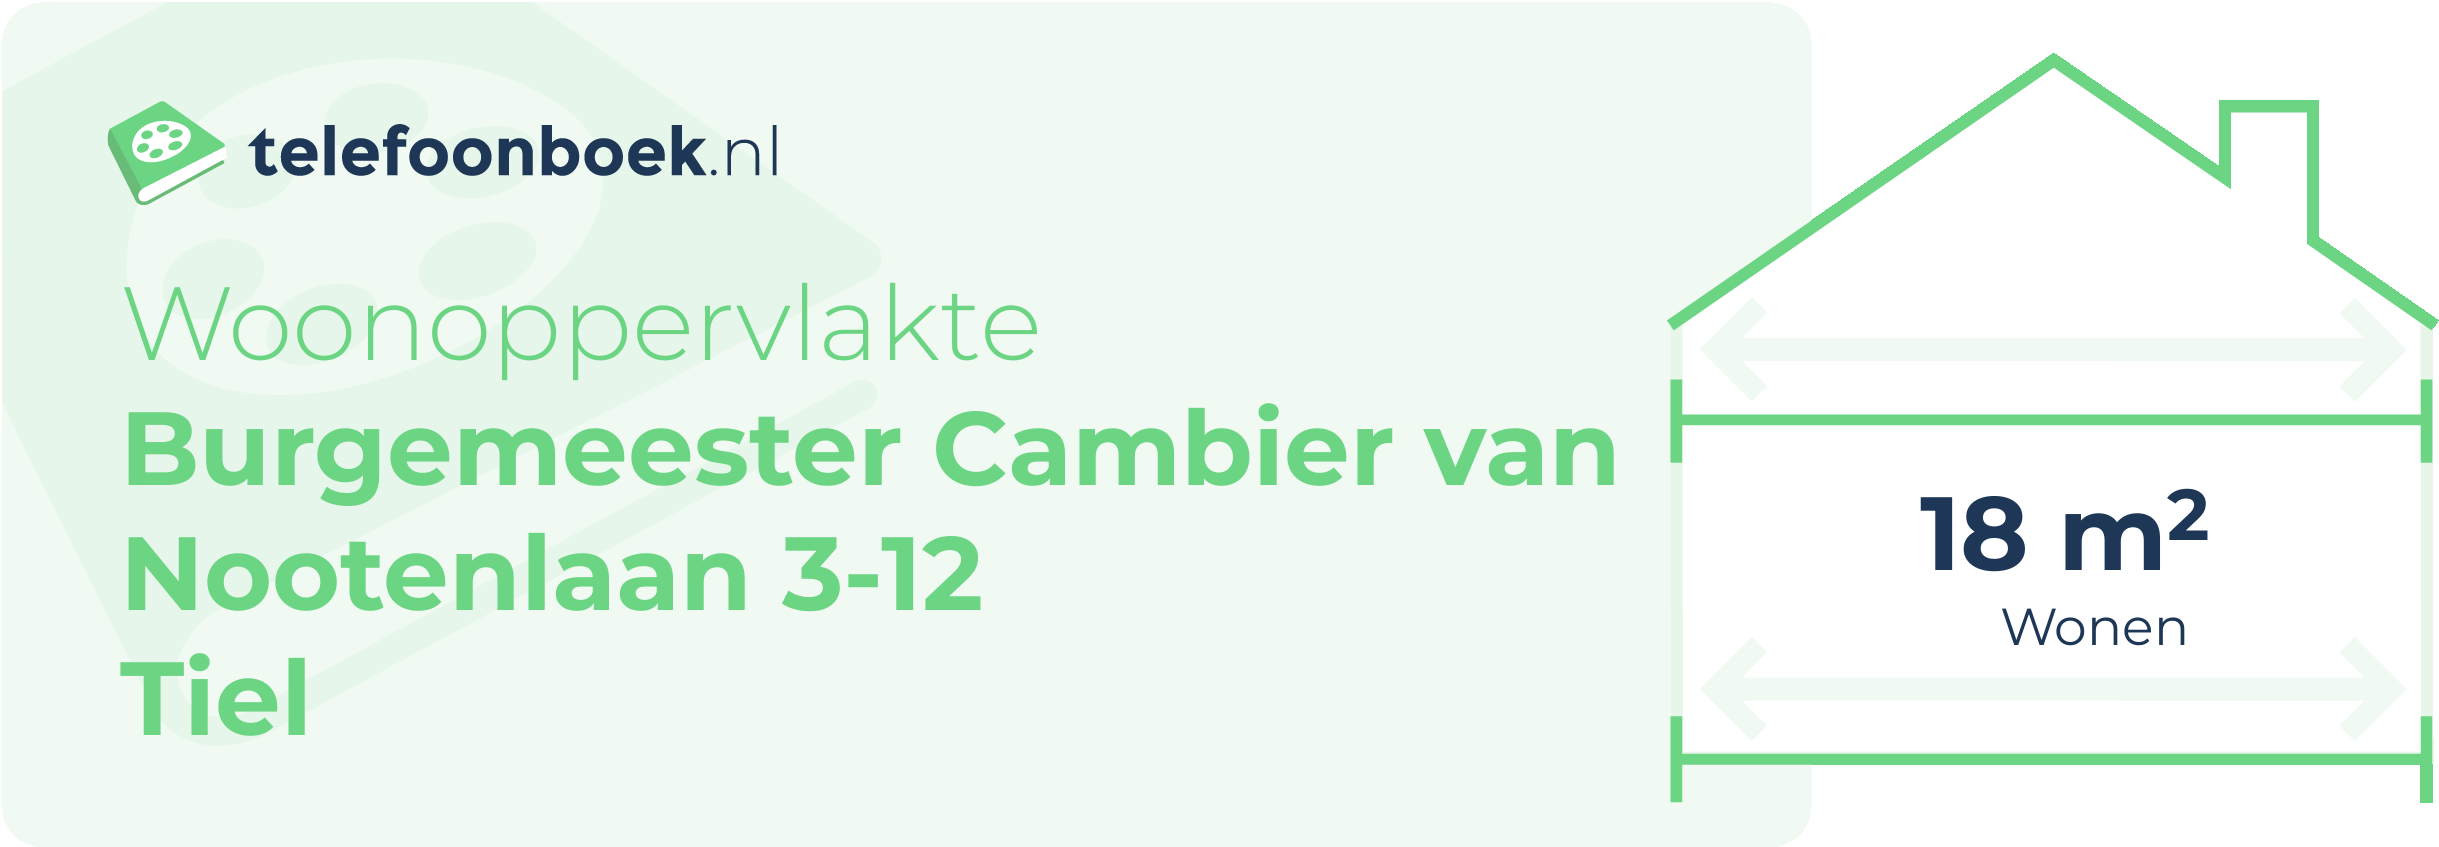 Woonoppervlakte Burgemeester Cambier Van Nootenlaan 3-12 Tiel